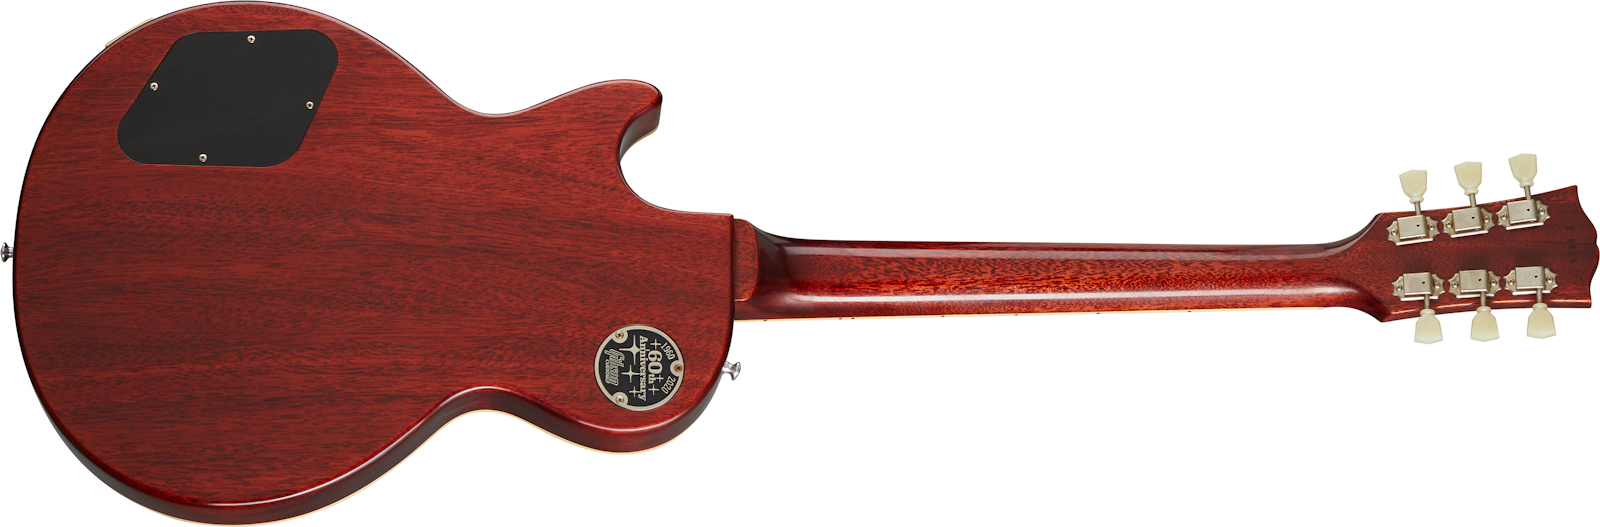 Gibson Custom Shop Les Paul Standard 1960 V1 60th Anniversary 2h Ht Rw - Vos Antiquity Burst - Guitare Électrique Single Cut - Variation 1